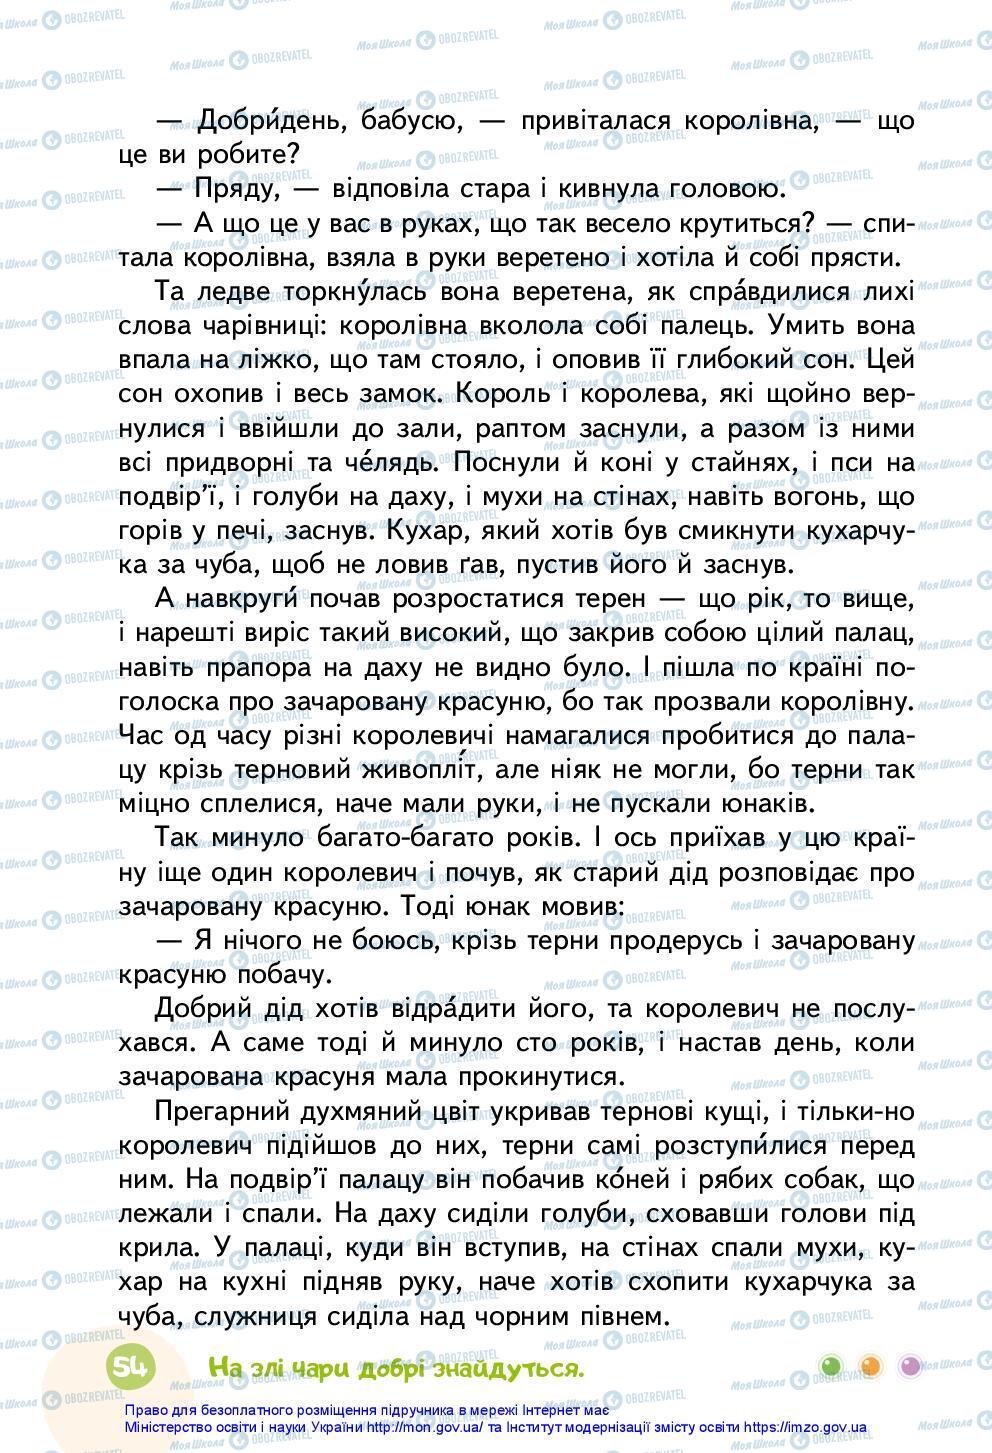 Підручники Українська мова 3 клас сторінка 54